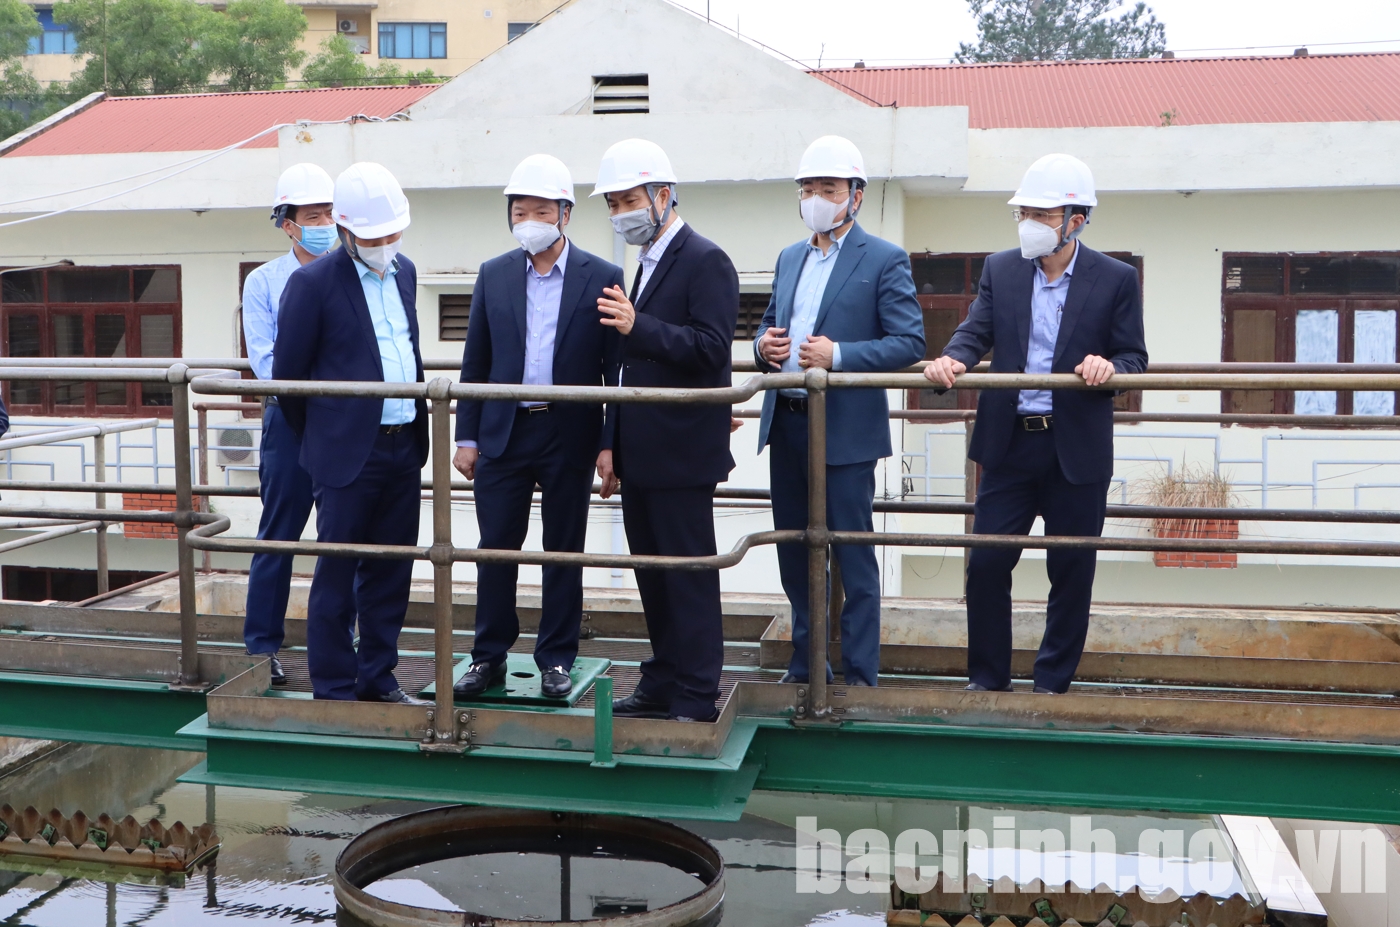 Tổng hợp các phóng sự của Truyền hình Bắc Ninh về hoạt động sản xuất kinh doanh của Công ty nước sạch Bắc Ninh